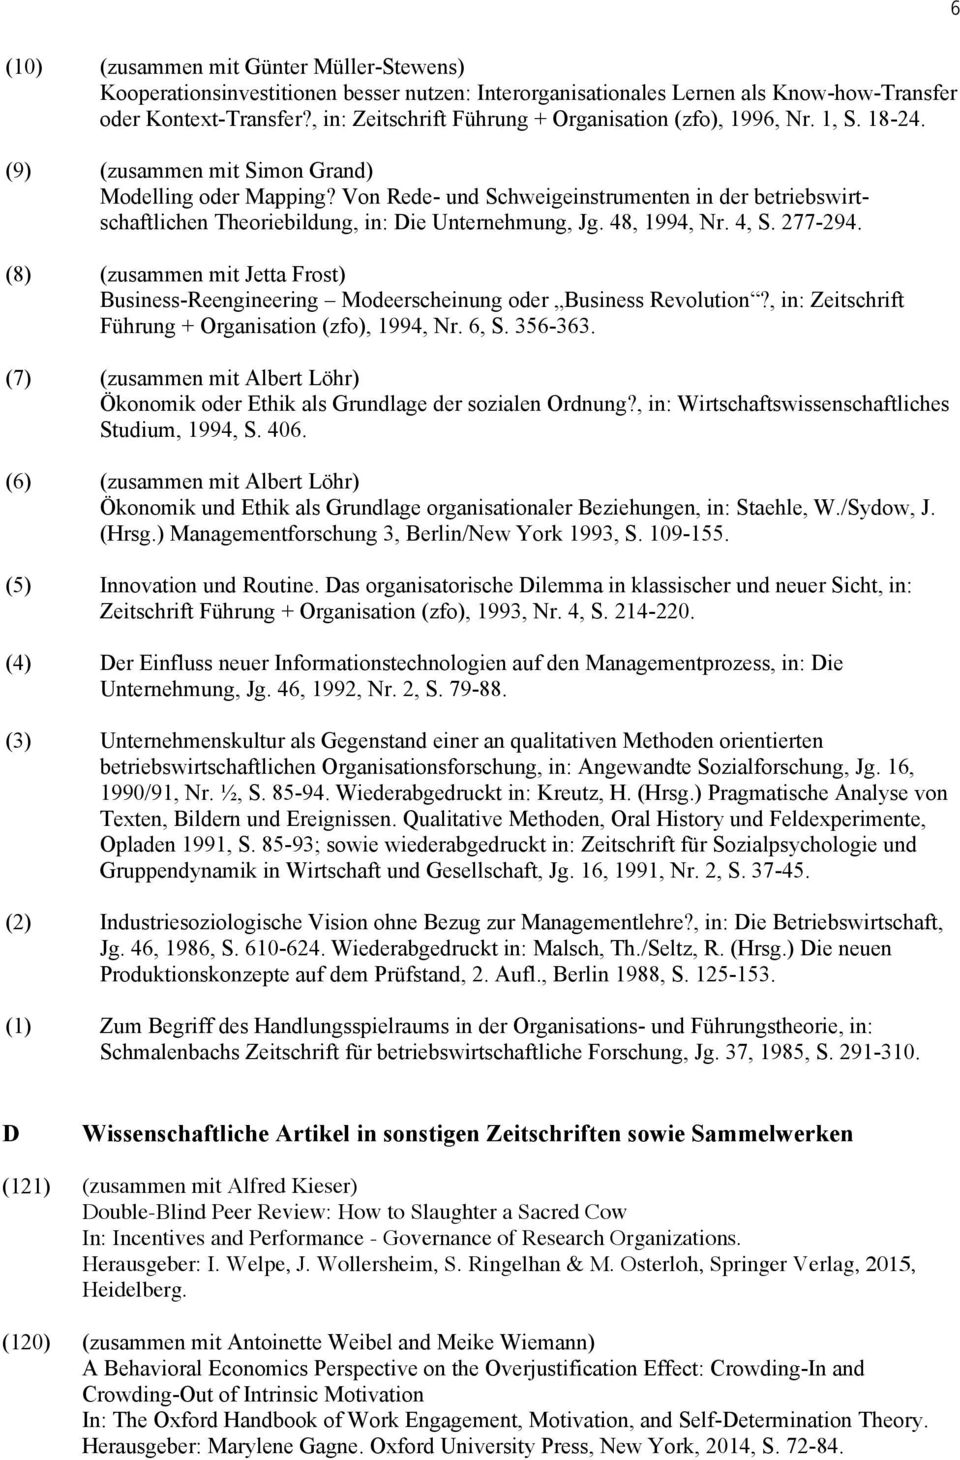 Von Rede- und Schweigeinstrumenten in der betriebswirtschaftlichen Theoriebildung, in: Die Unternehmung, Jg. 48, 1994, Nr. 4, S. 277-294.